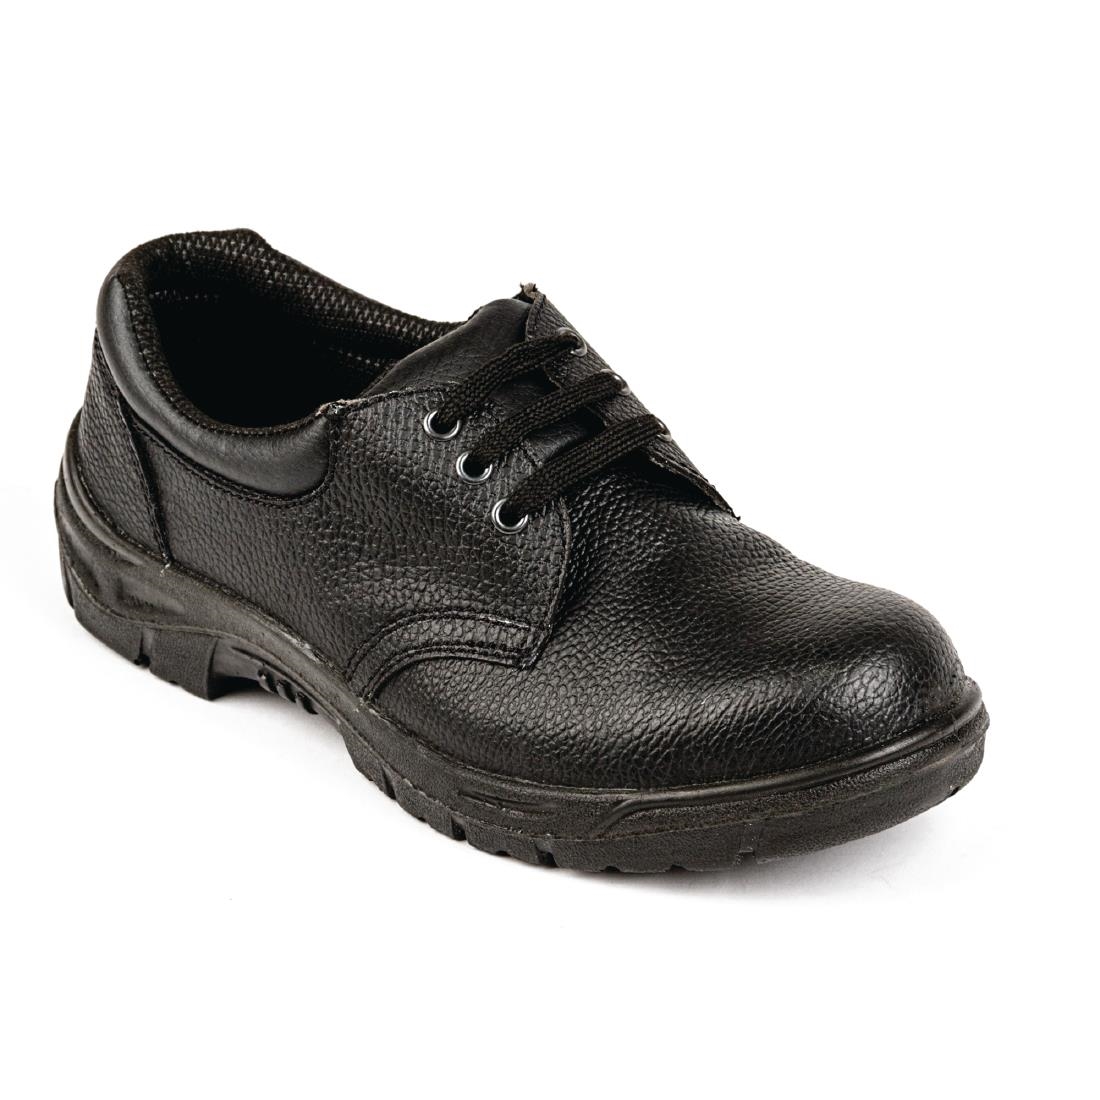 Nisbets Essentials Unisex Safety Shoe Black 39